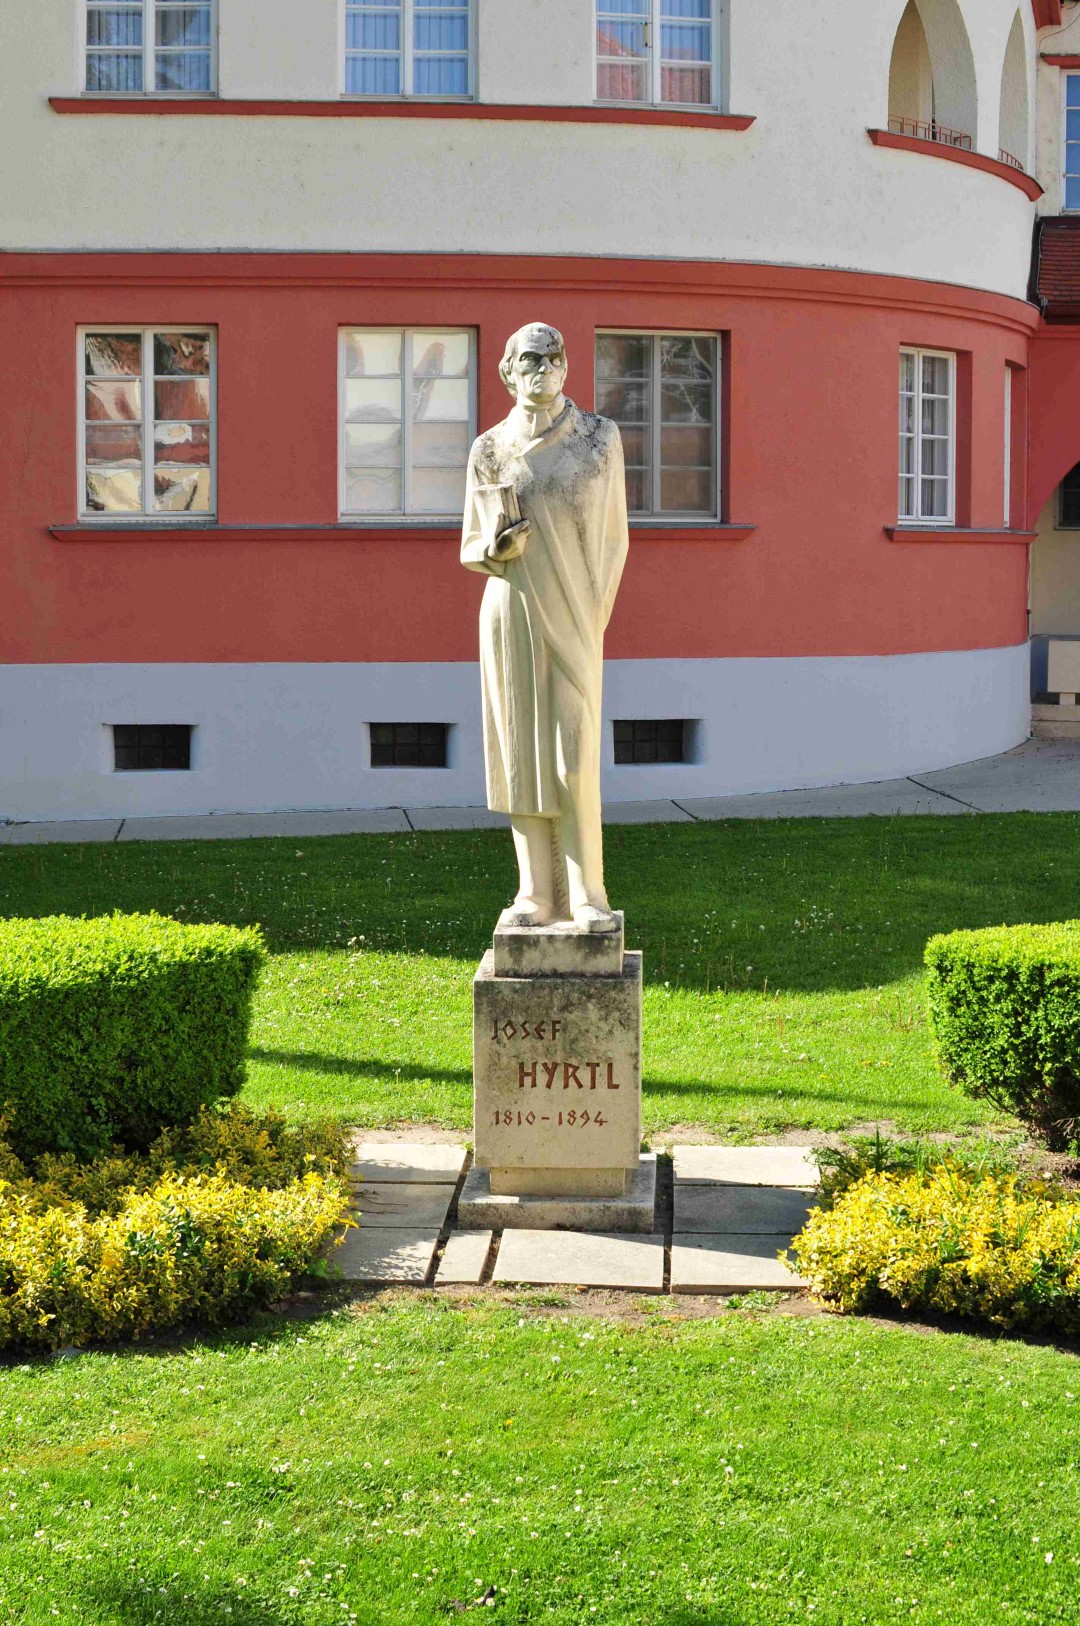 Männliche Person als Denkmal umgeben von einer Wiese, vor rotem Haus.